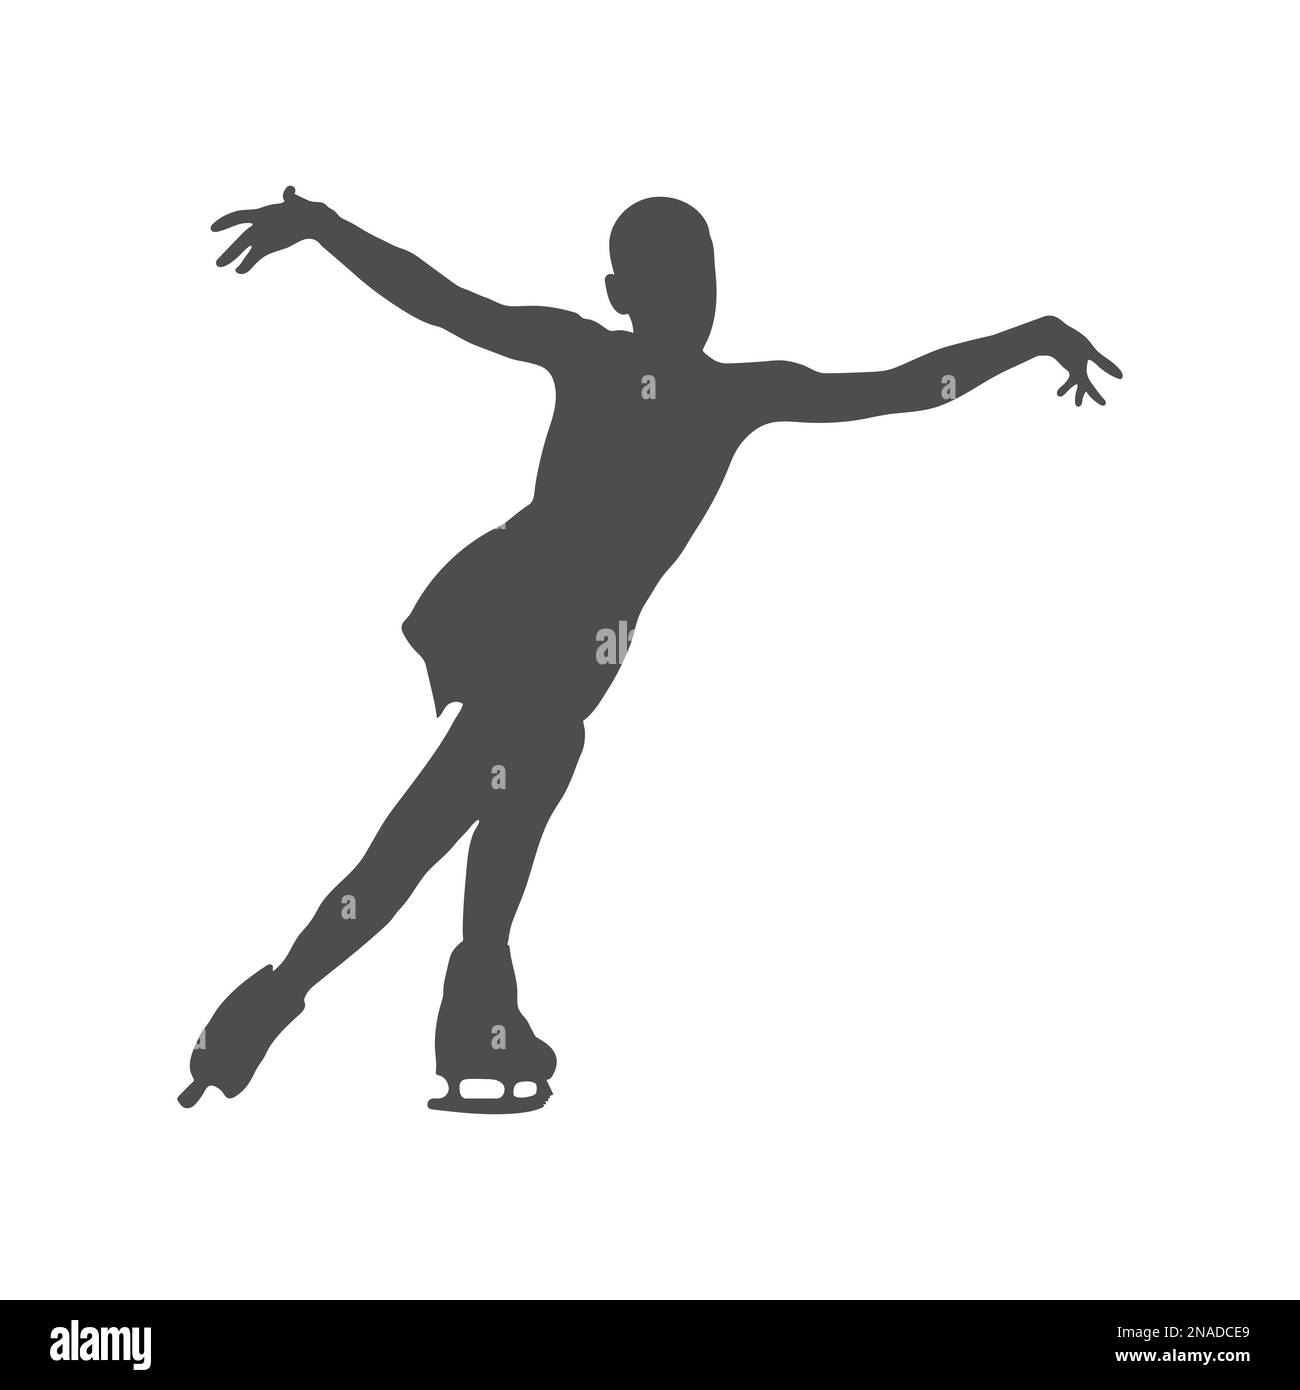 Sport. Figure skating. female figure skater silhouette. Flat design Stock Vector